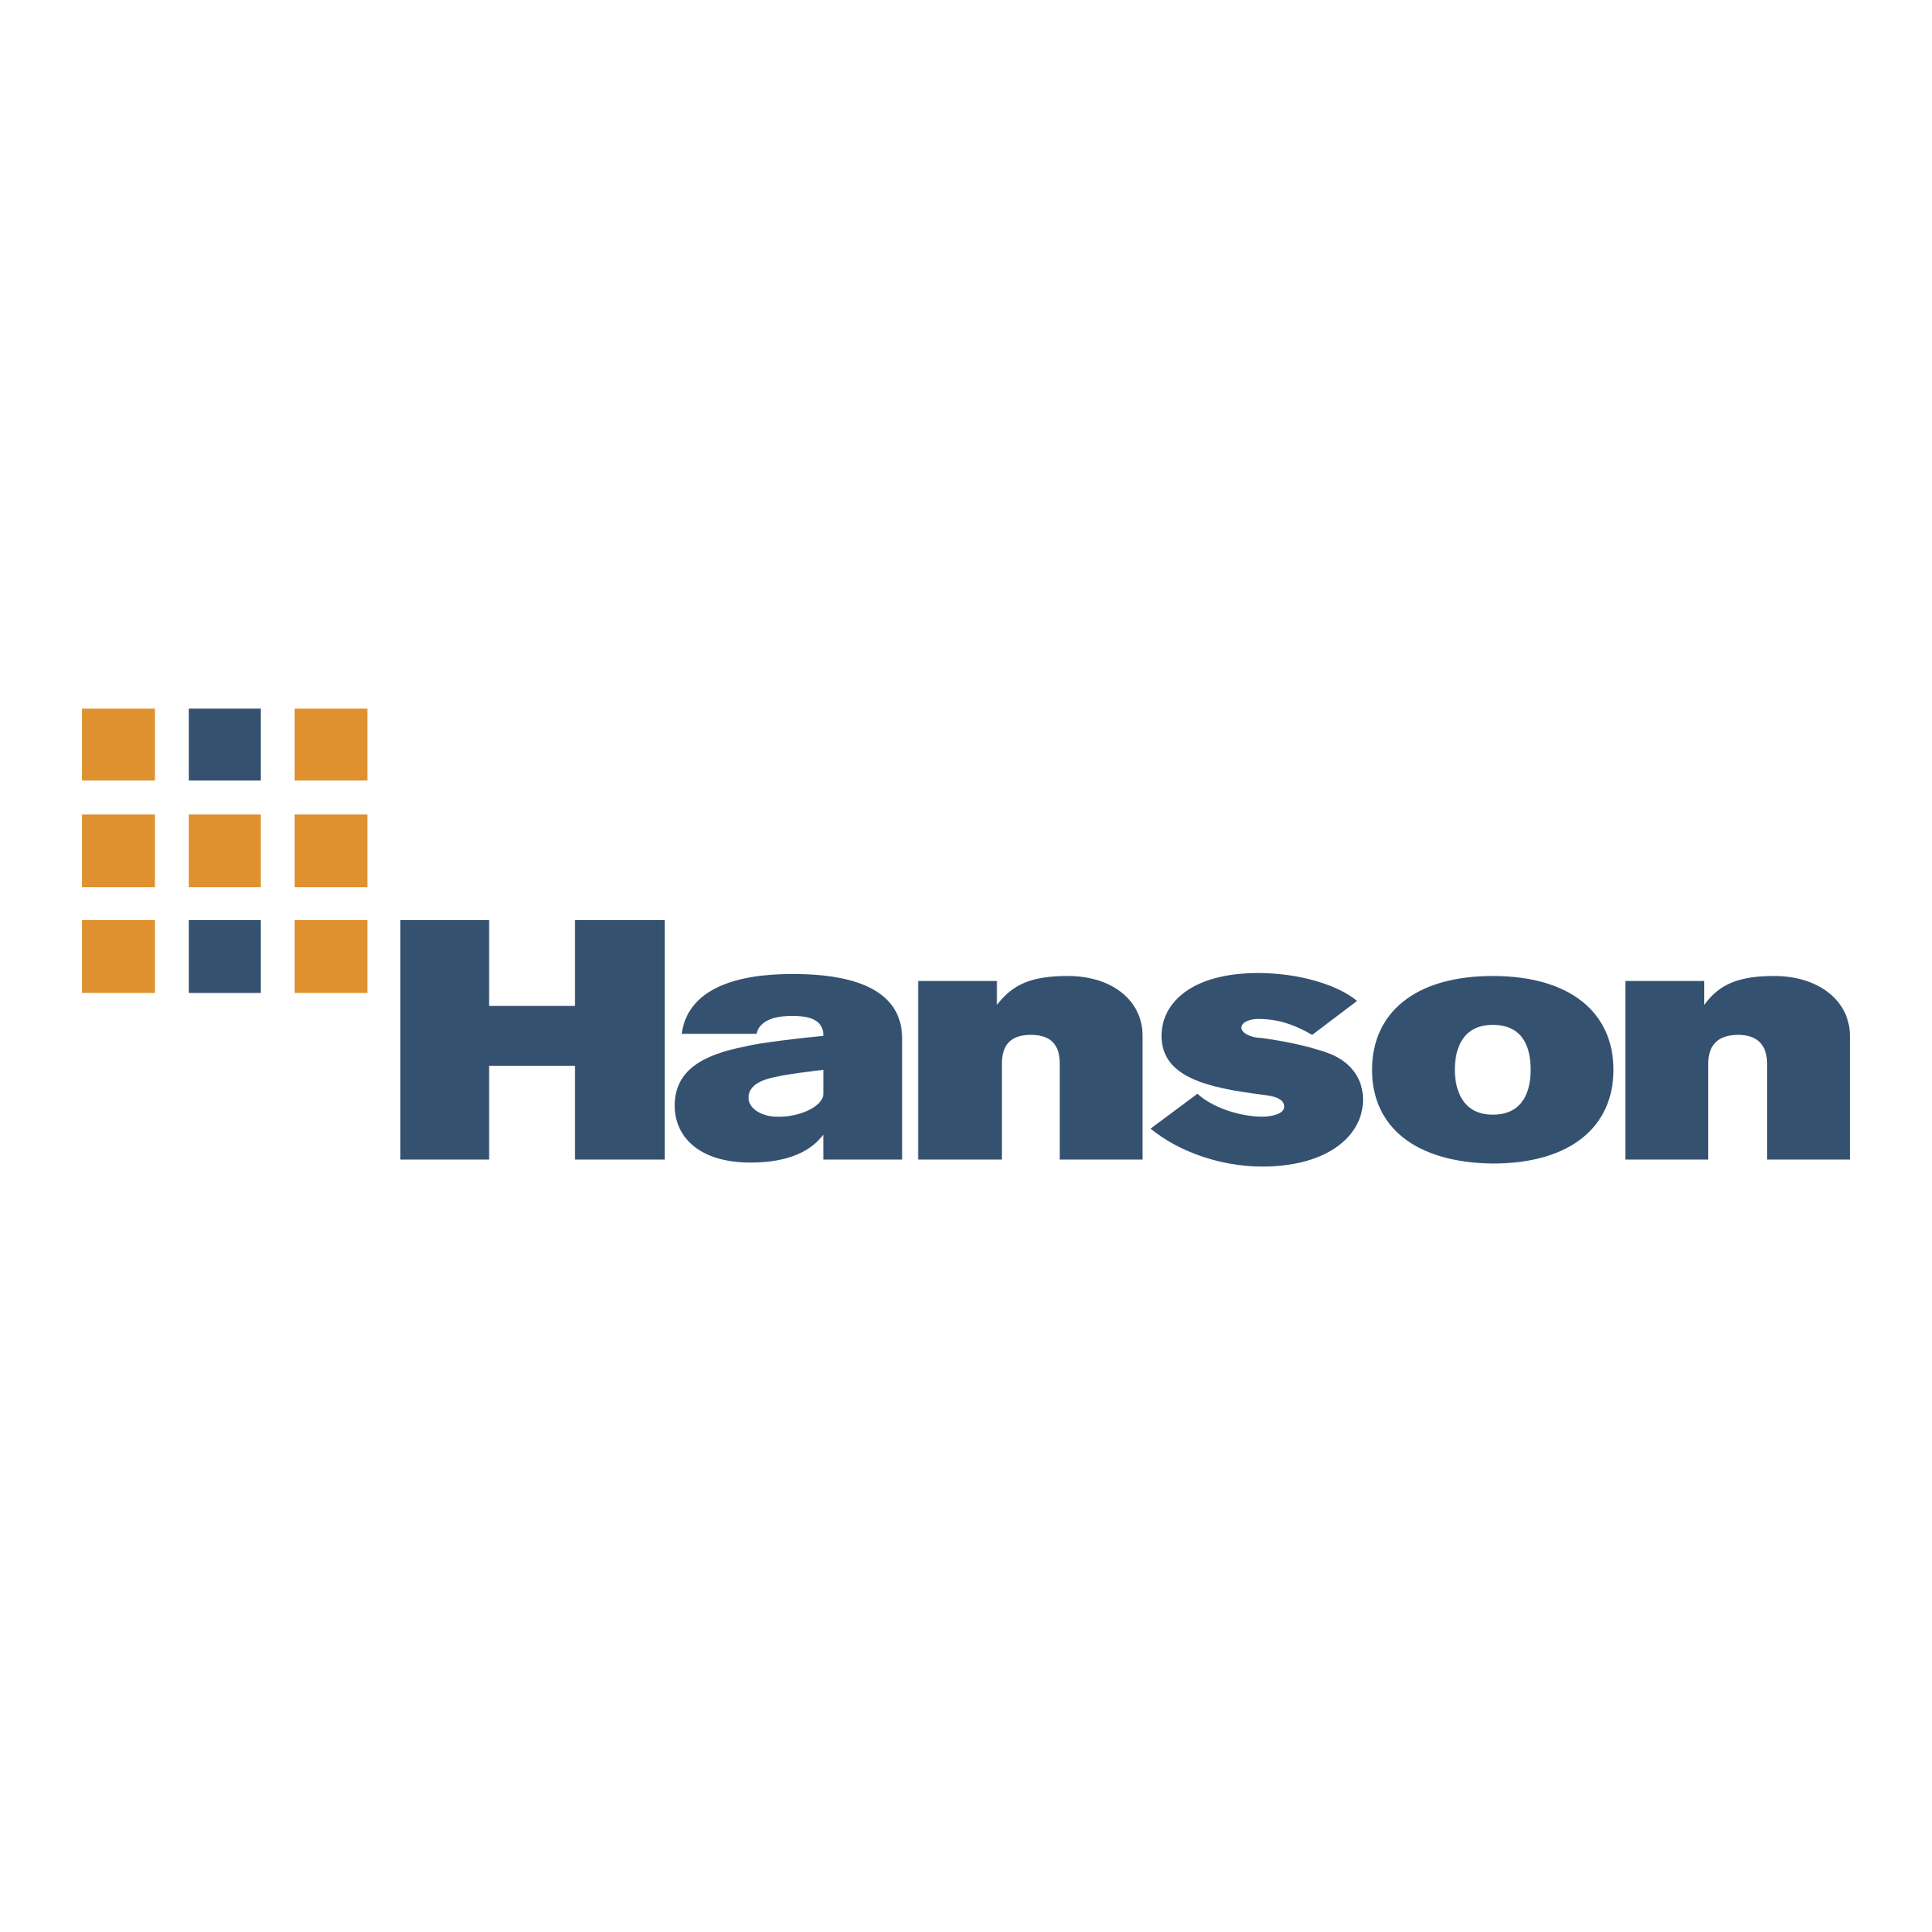 https://concept-uk.net/wp-content/uploads/2023/01/hanson-logo-png-transparent.png